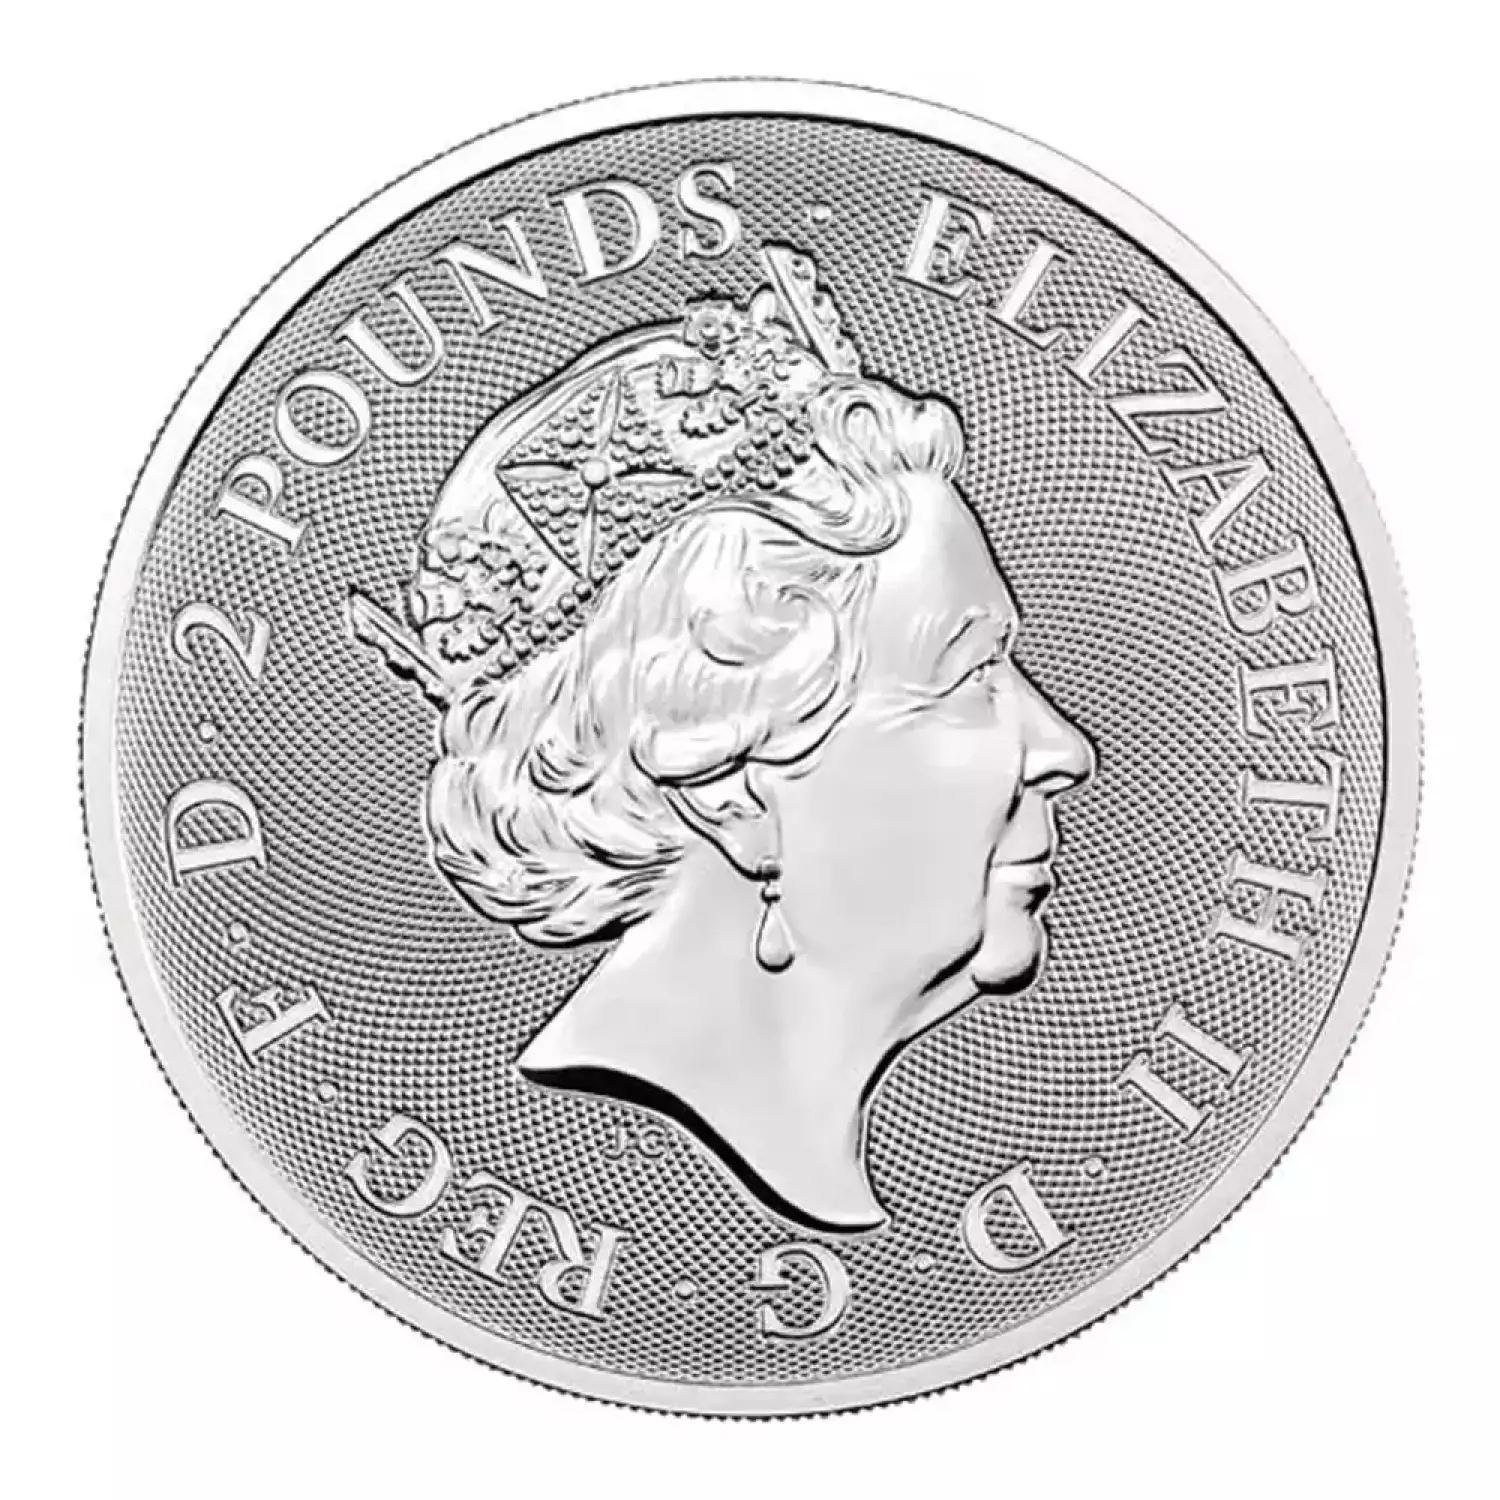 2021 1 oz Royal Mint Silver Valiant Coin (3)